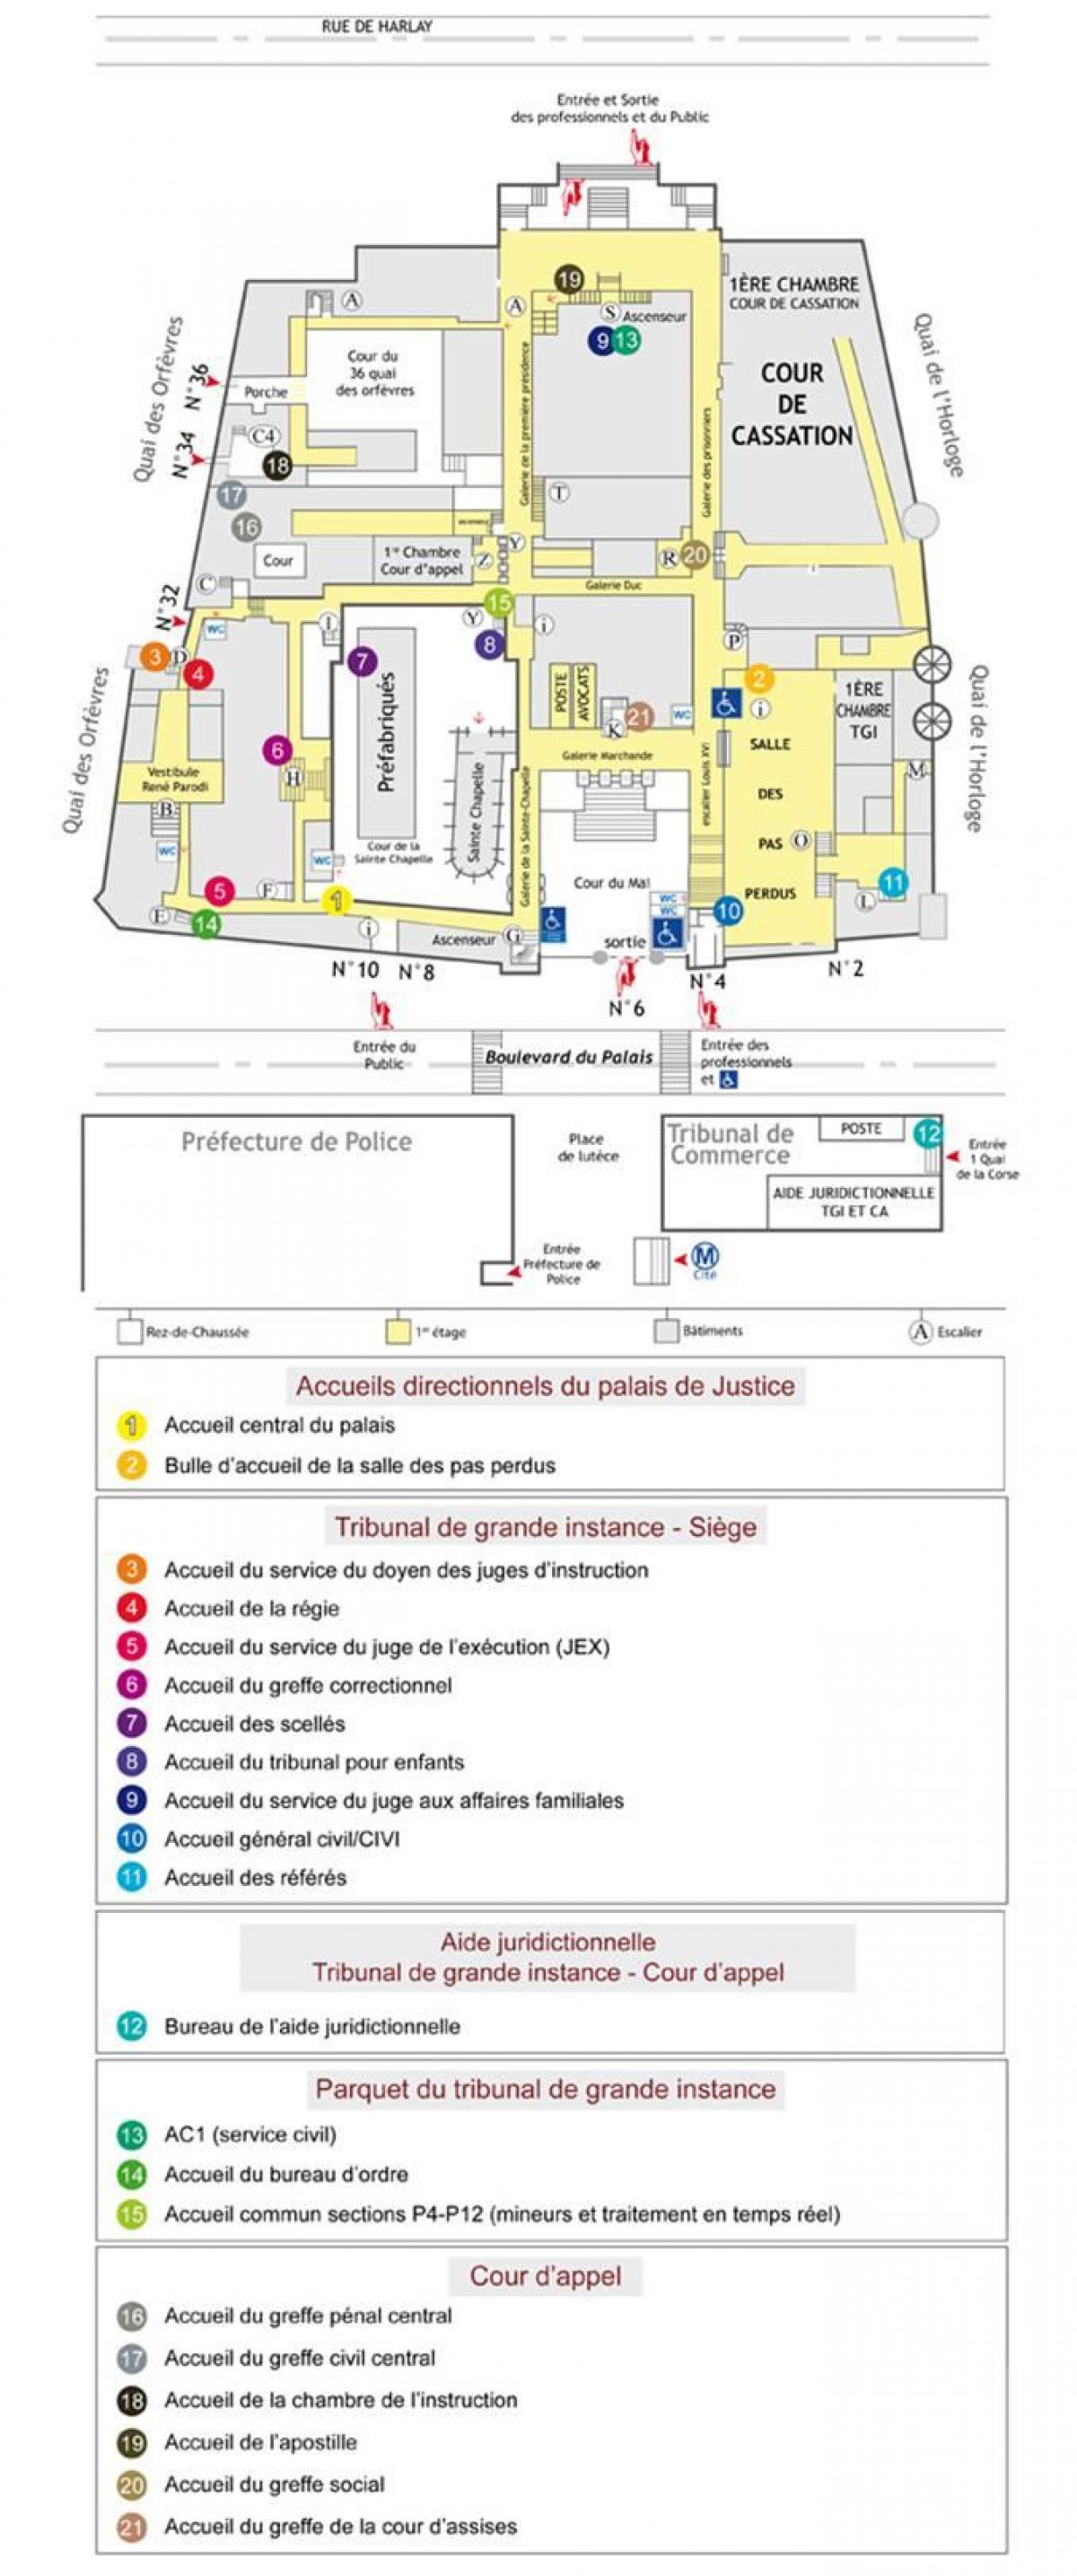 რუკა Palais de იუსტიციის პარიზში